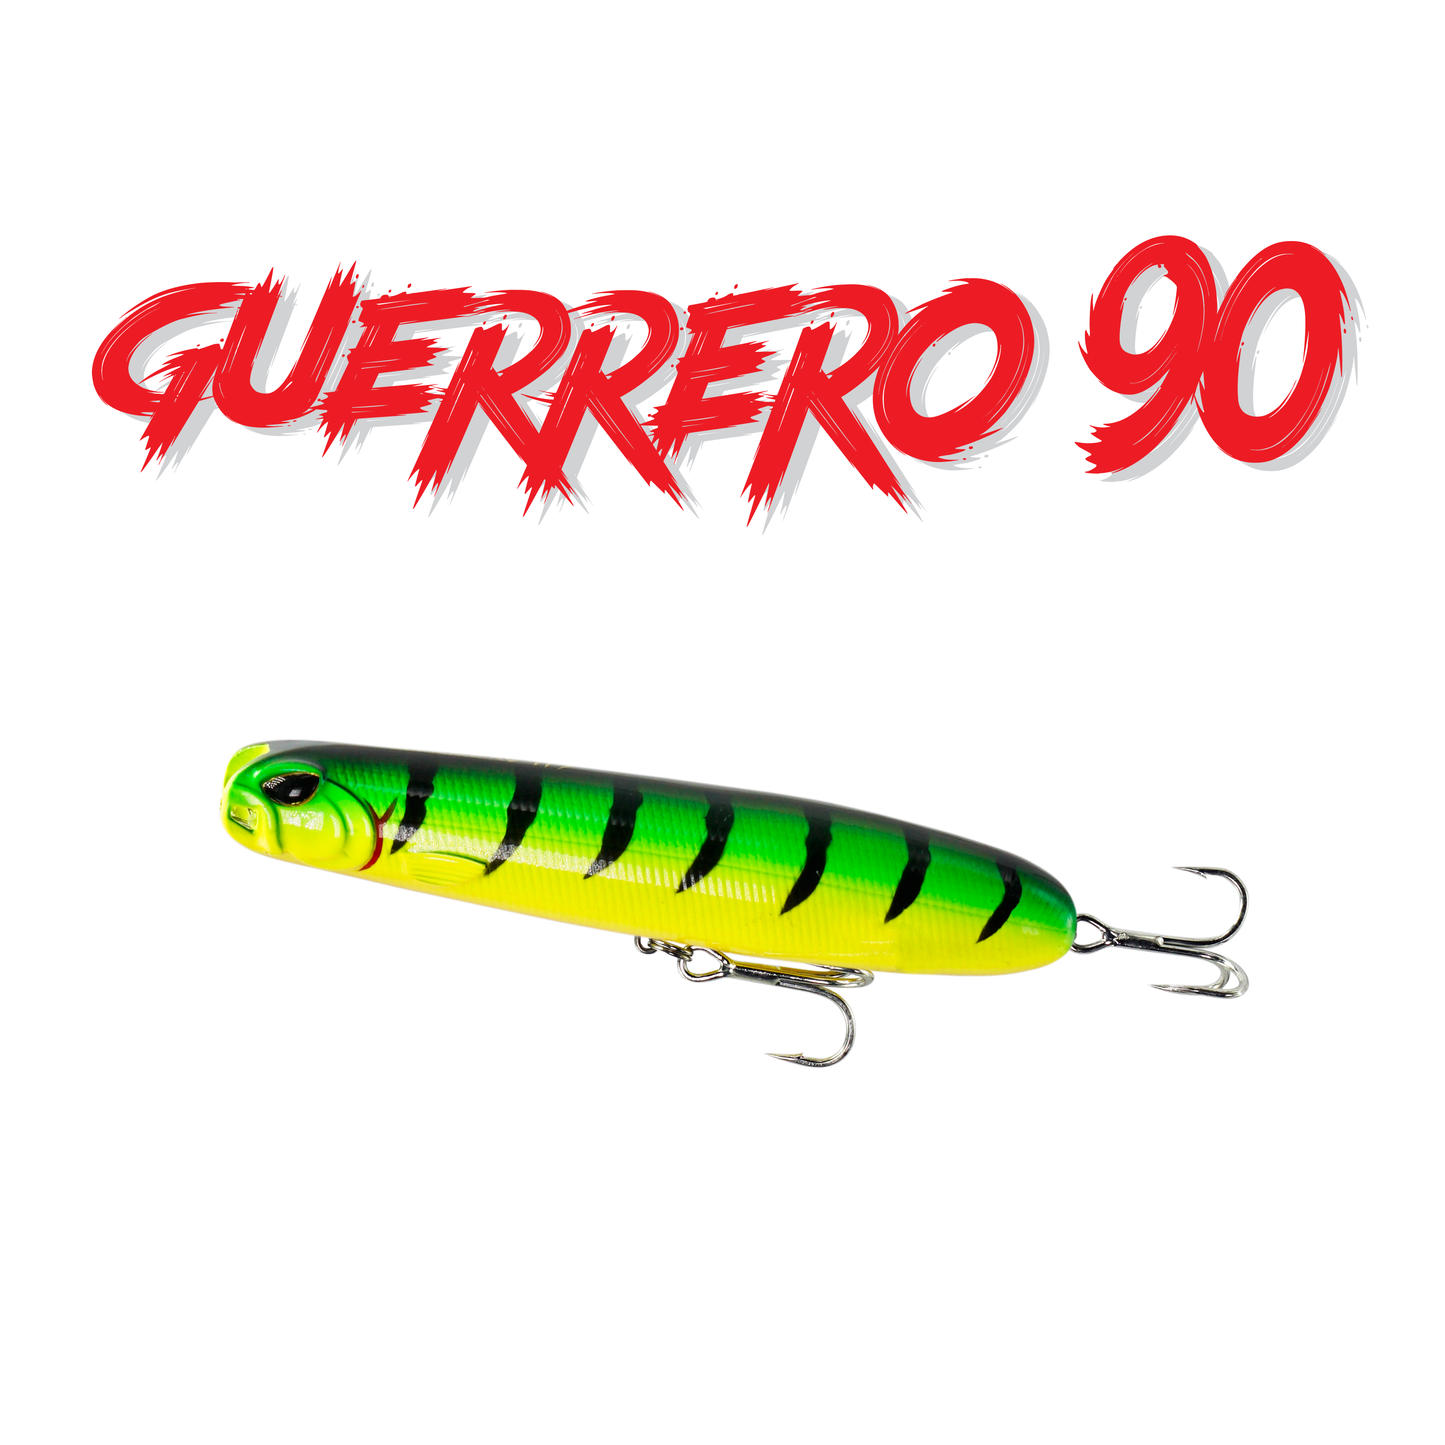 Guerrero 90